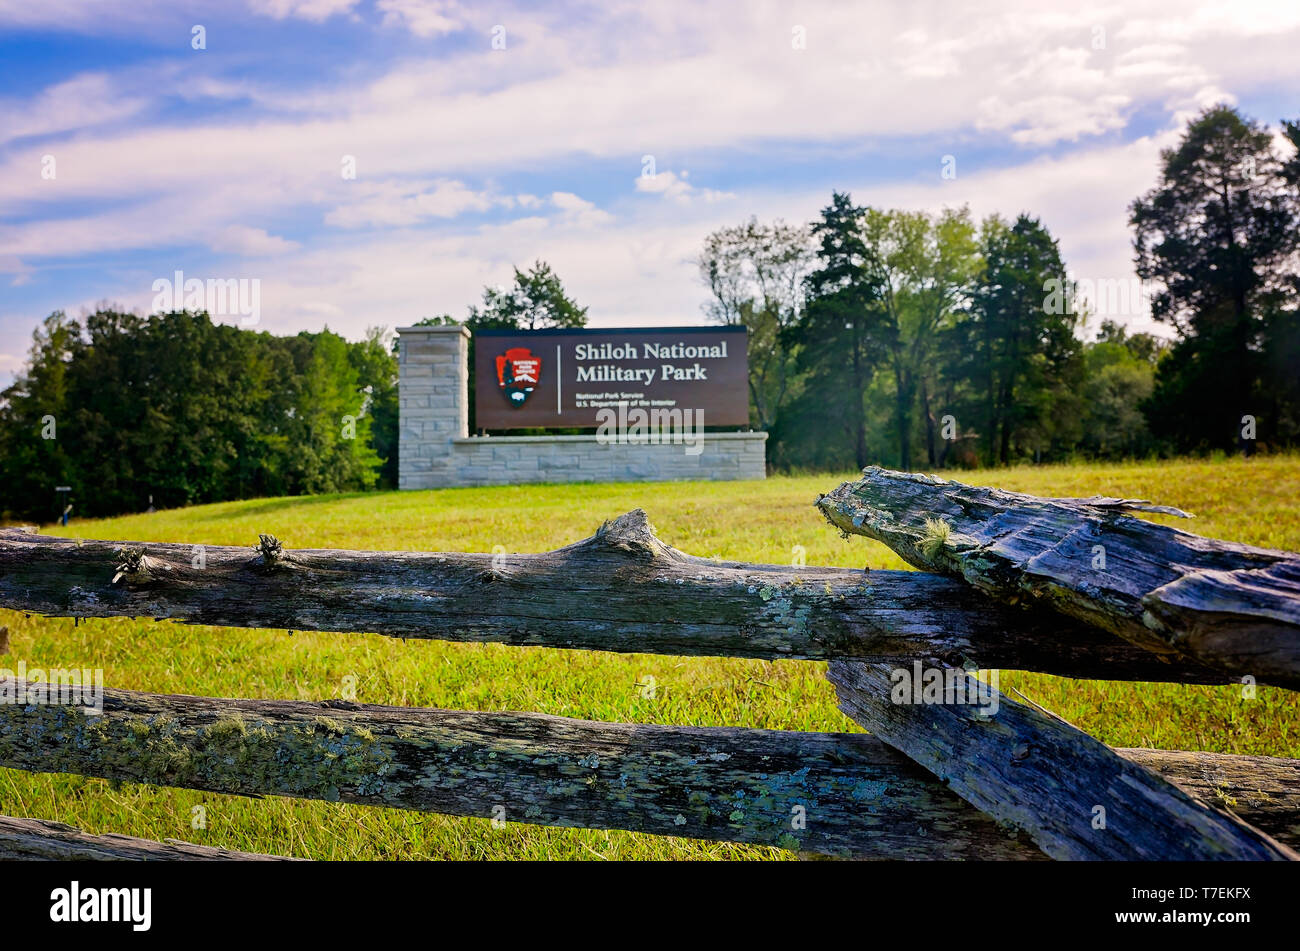 Die Silo National Military Park Eingang verfügt über ein Zeichen und eine zig-zag split Schiene Zaun, Sept. 21, 2016, Silo, Tennessee. Der Park erinnert an Stockfoto